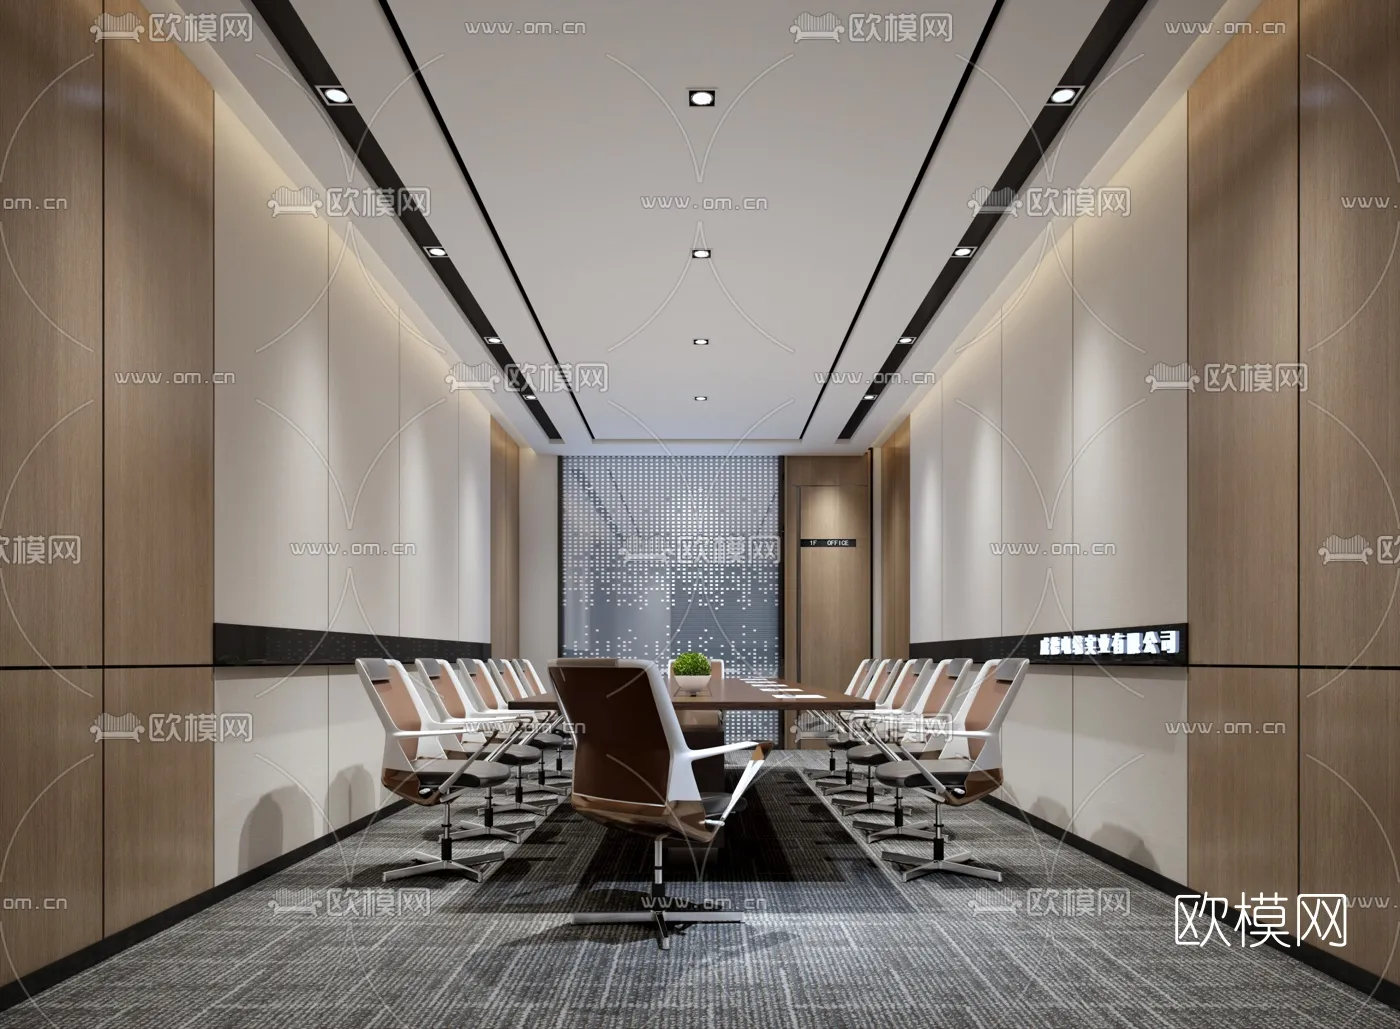 Meeting Room 3D Scenes – 1460